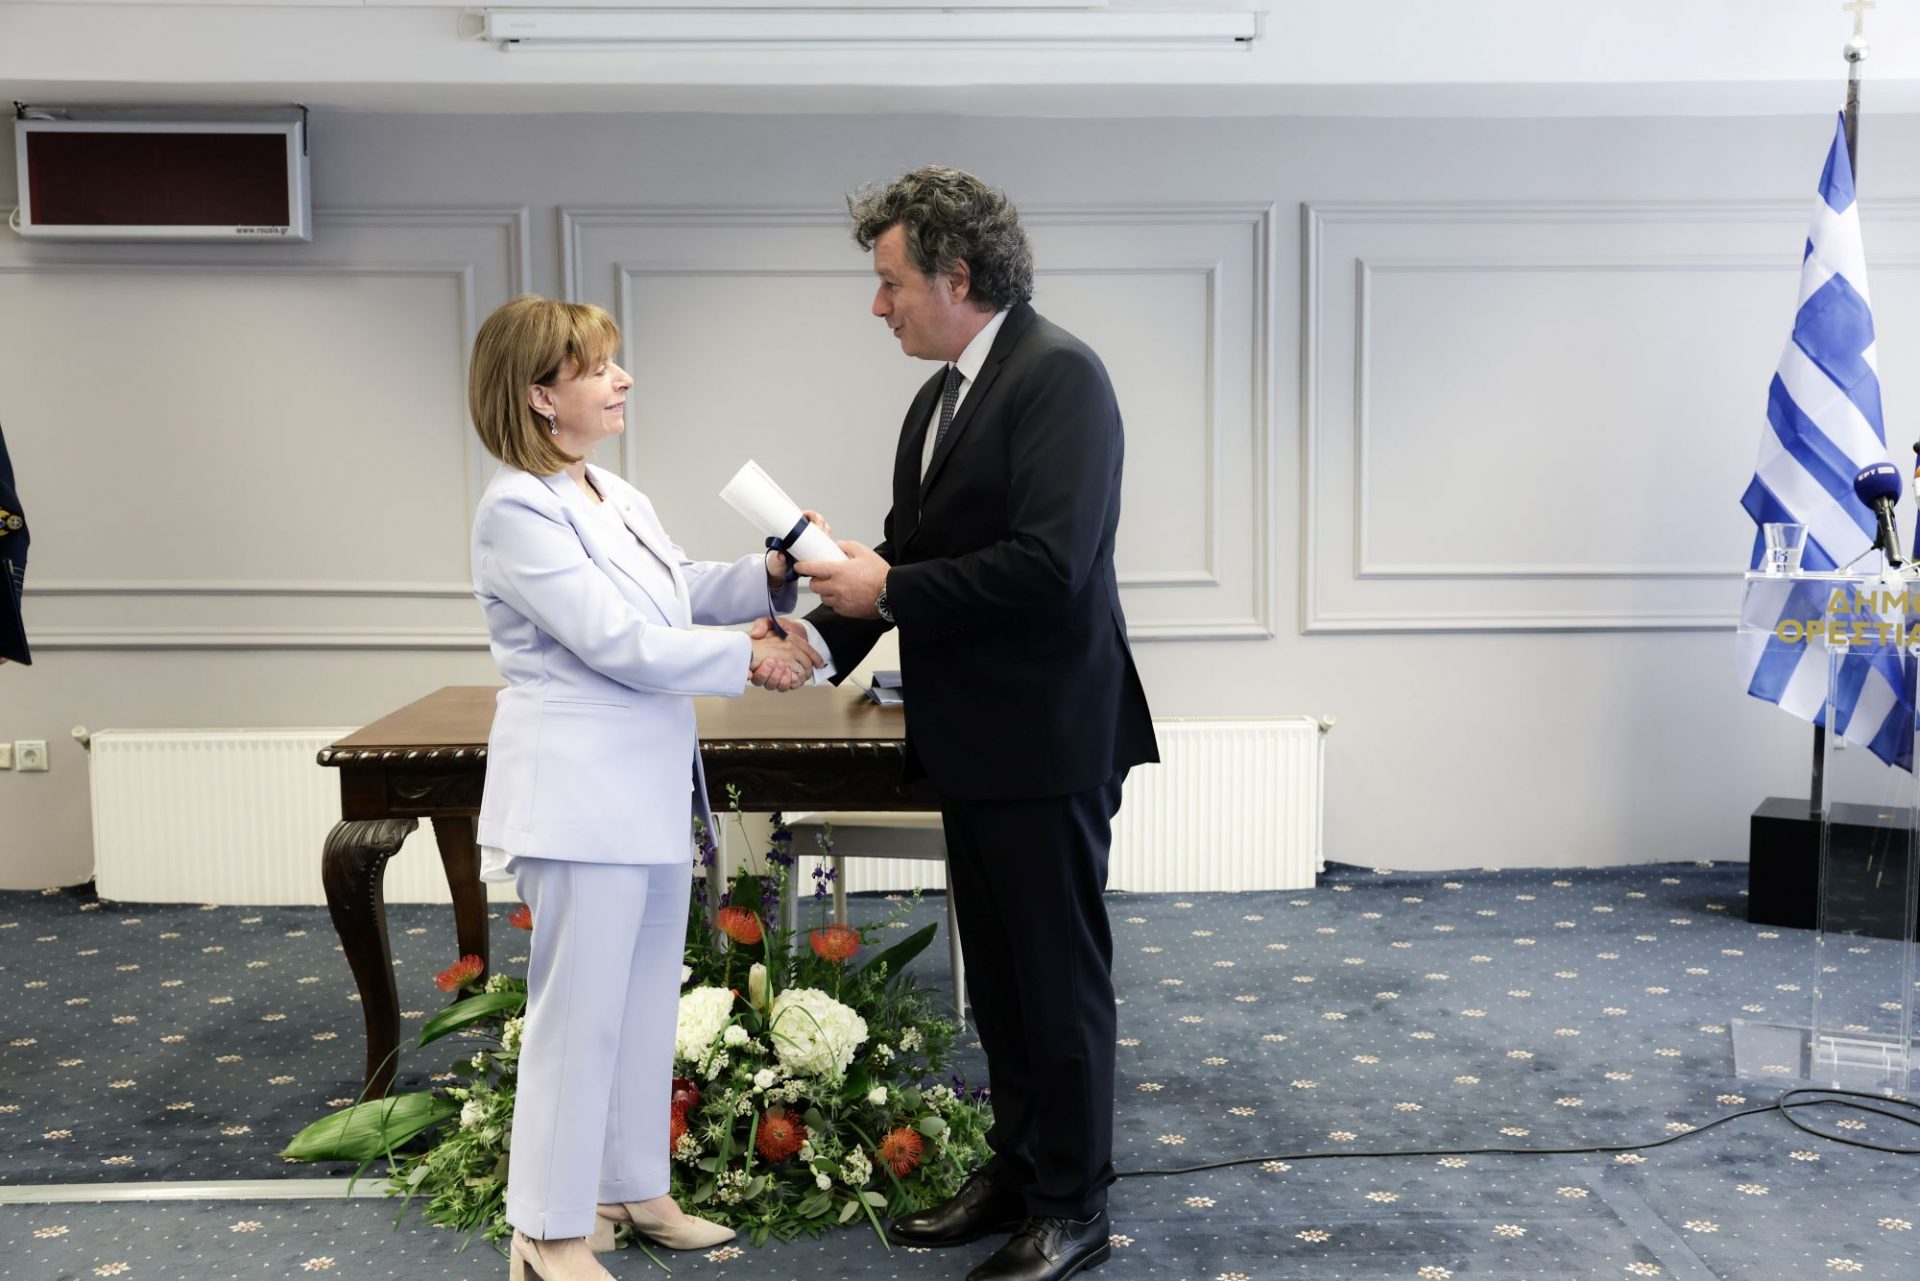 Επίσκεψη της Προέδρου της Δημοκρατίας Κατερίνας Σακελλαροπούλου στην Ορεστιάδα και ανακήρυξή της σε Επίτιμη Δημότη